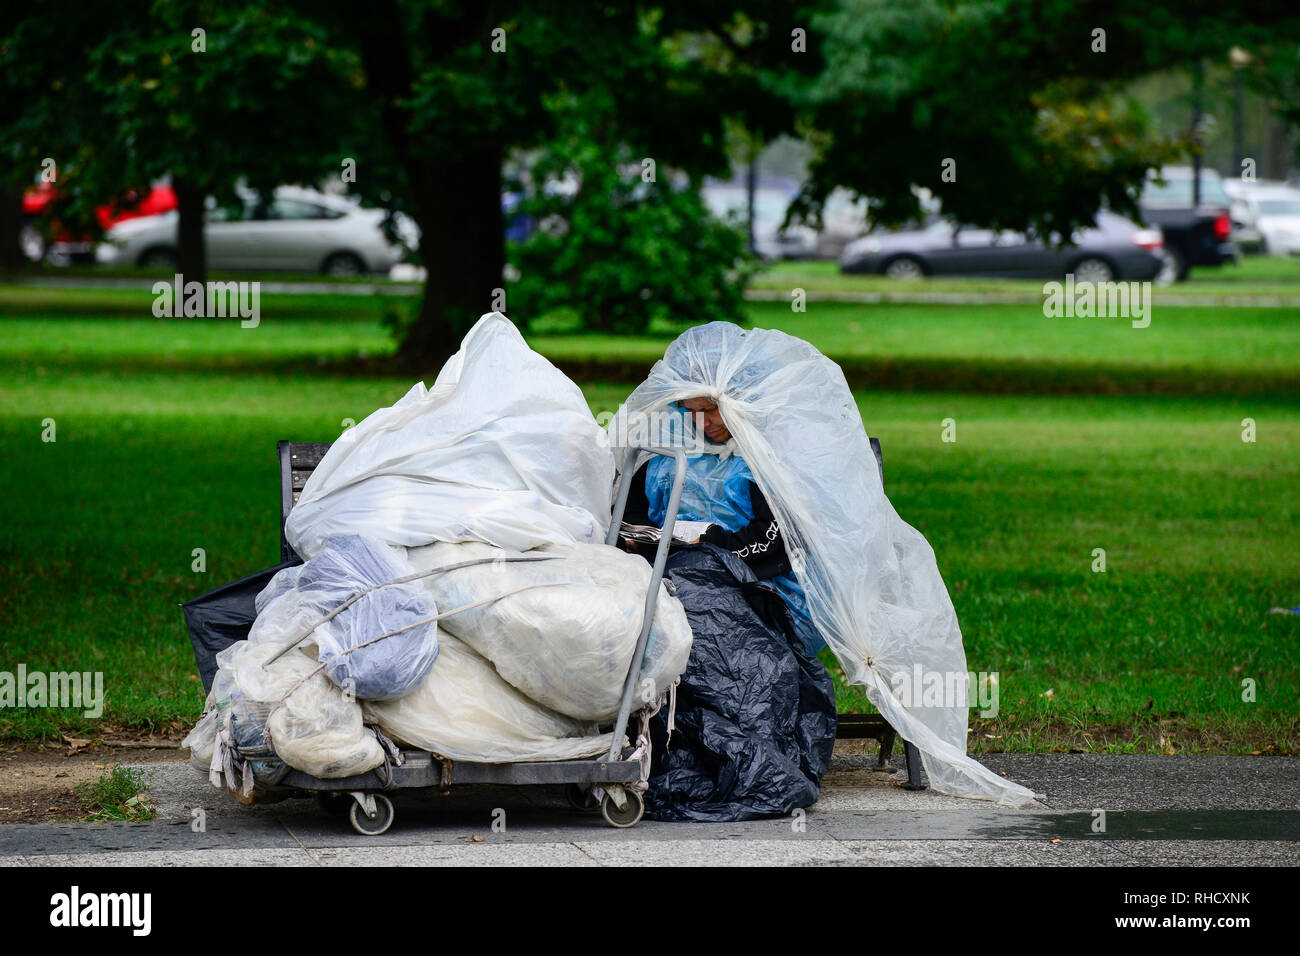 Stati Uniti d'America, Washington DC, donna senzatetto nel parco vicino casa bianca / STATI UNITI D'AMERICA, Washington DC, obdachlose Frau im Park beim weissen Haus Foto Stock